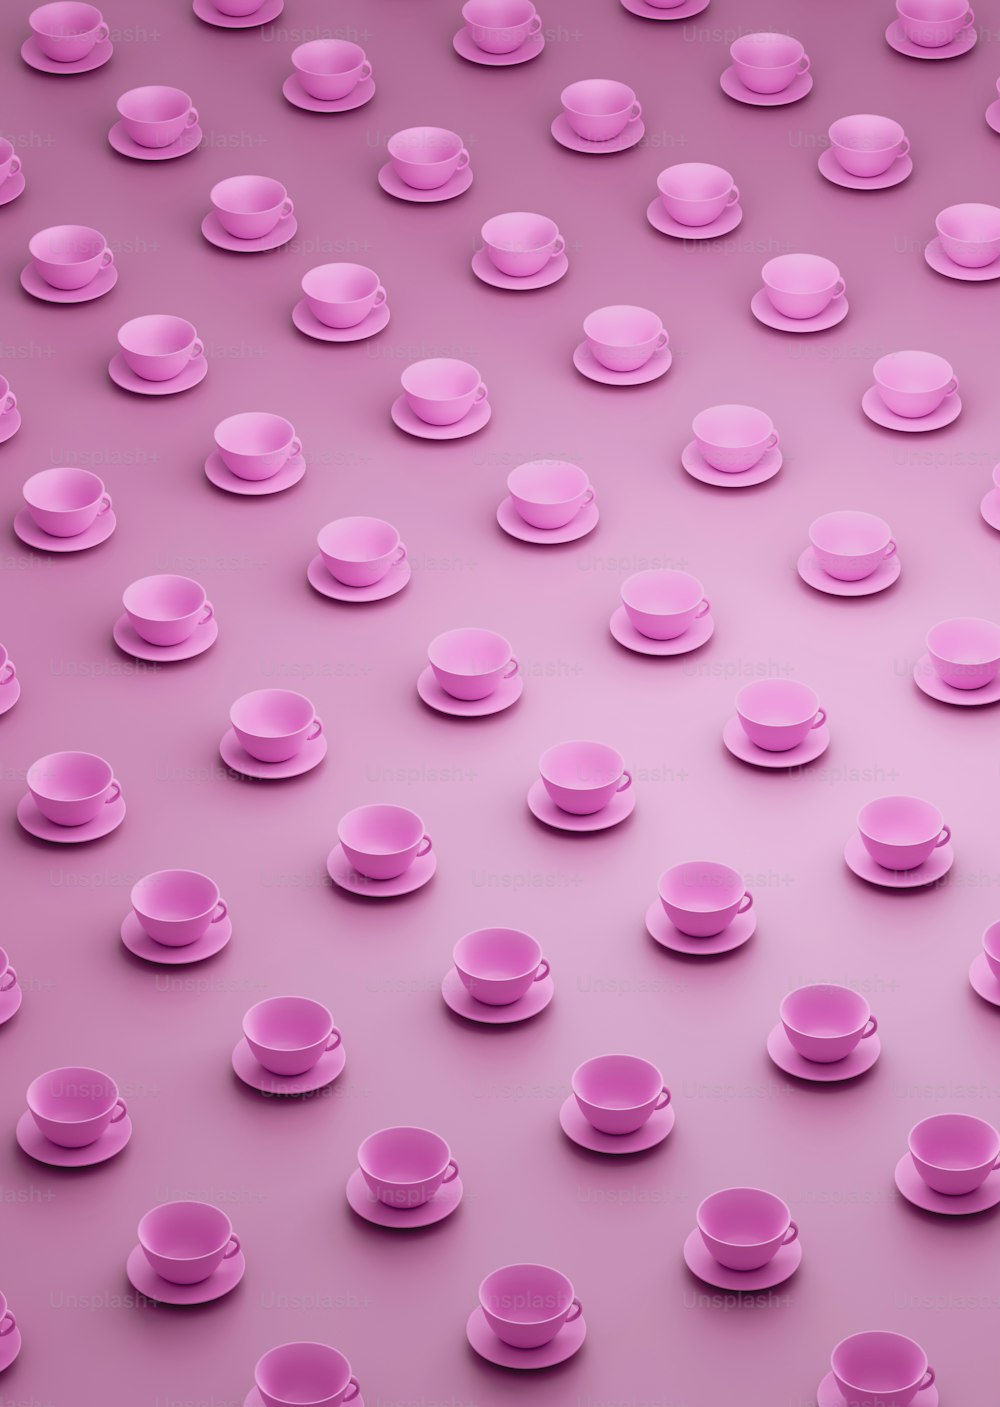 Un gruppo di tazze e piattini rosa su uno sfondo rosa